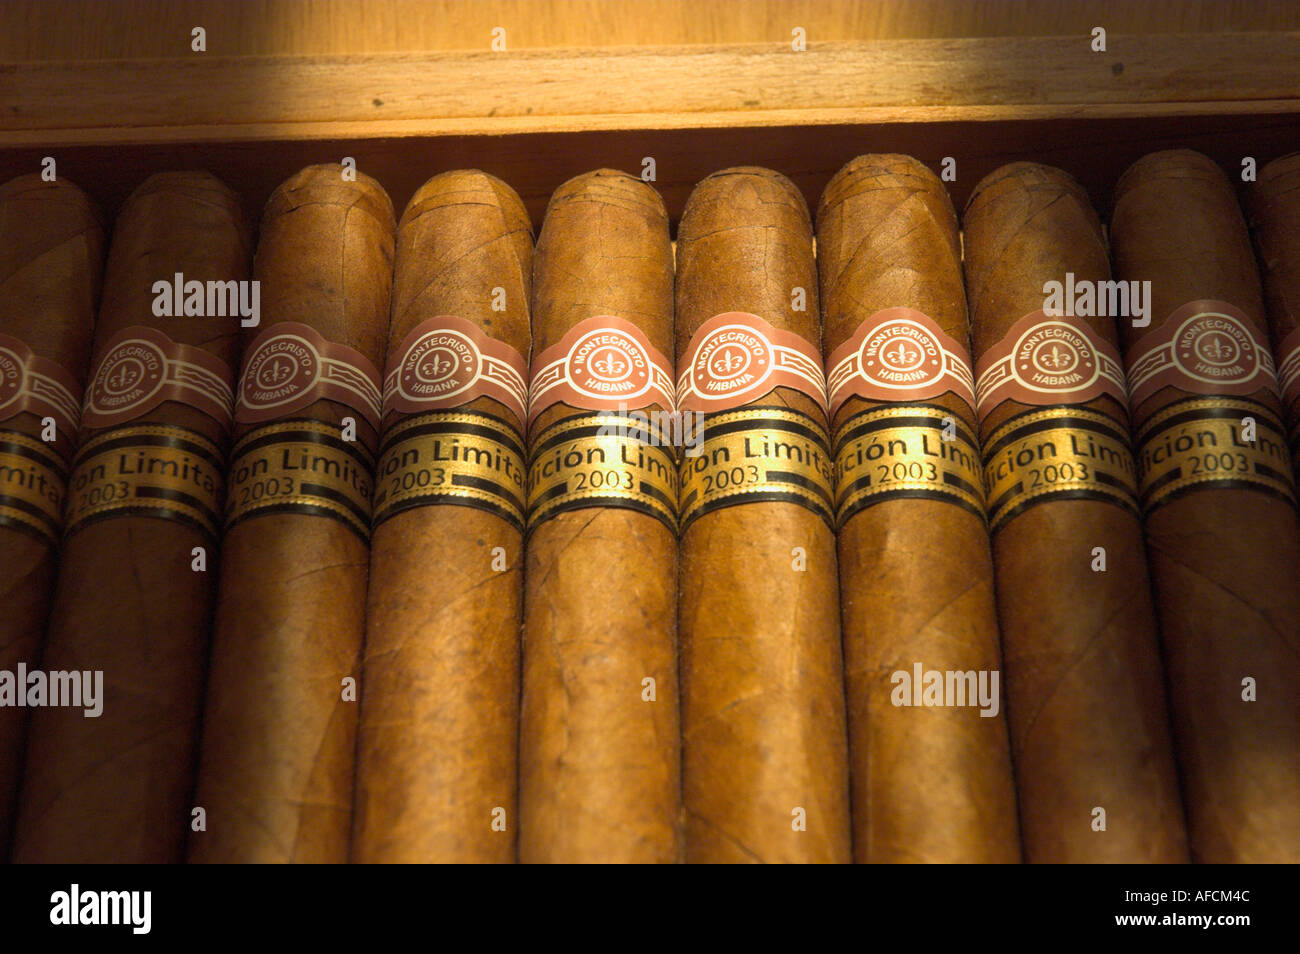 Cuba La Havane cigares dans une boîte Monte Cristo limited edition close up Banque D'Images